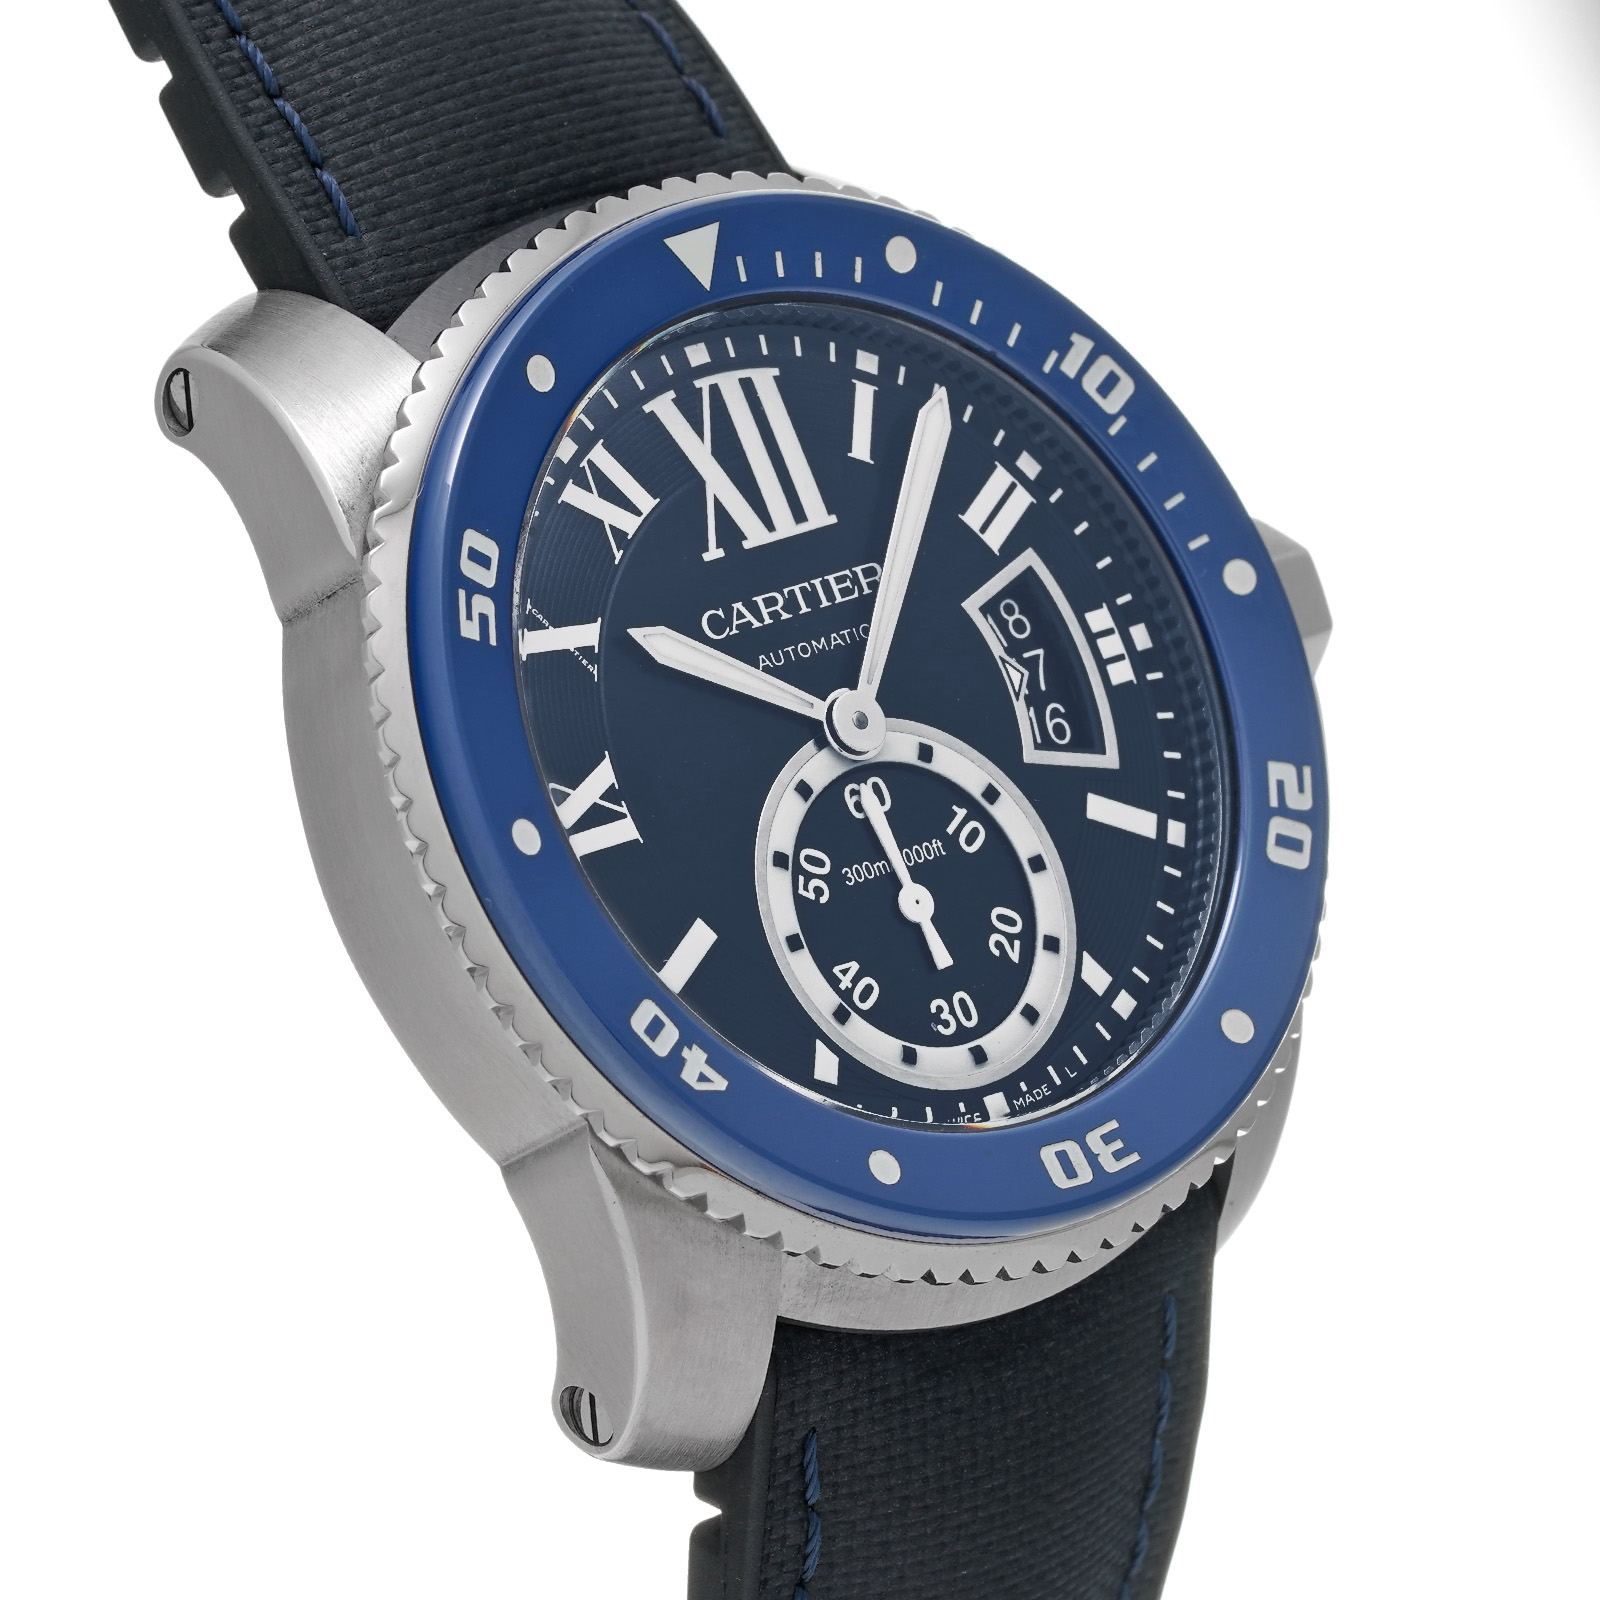 カルティエ Cartier カリブル ドゥ カルティエ ダイバー WSCA0012 メンズ 腕時計 デイト 自動巻き Calibre de Cartier Diver VLP 90188462